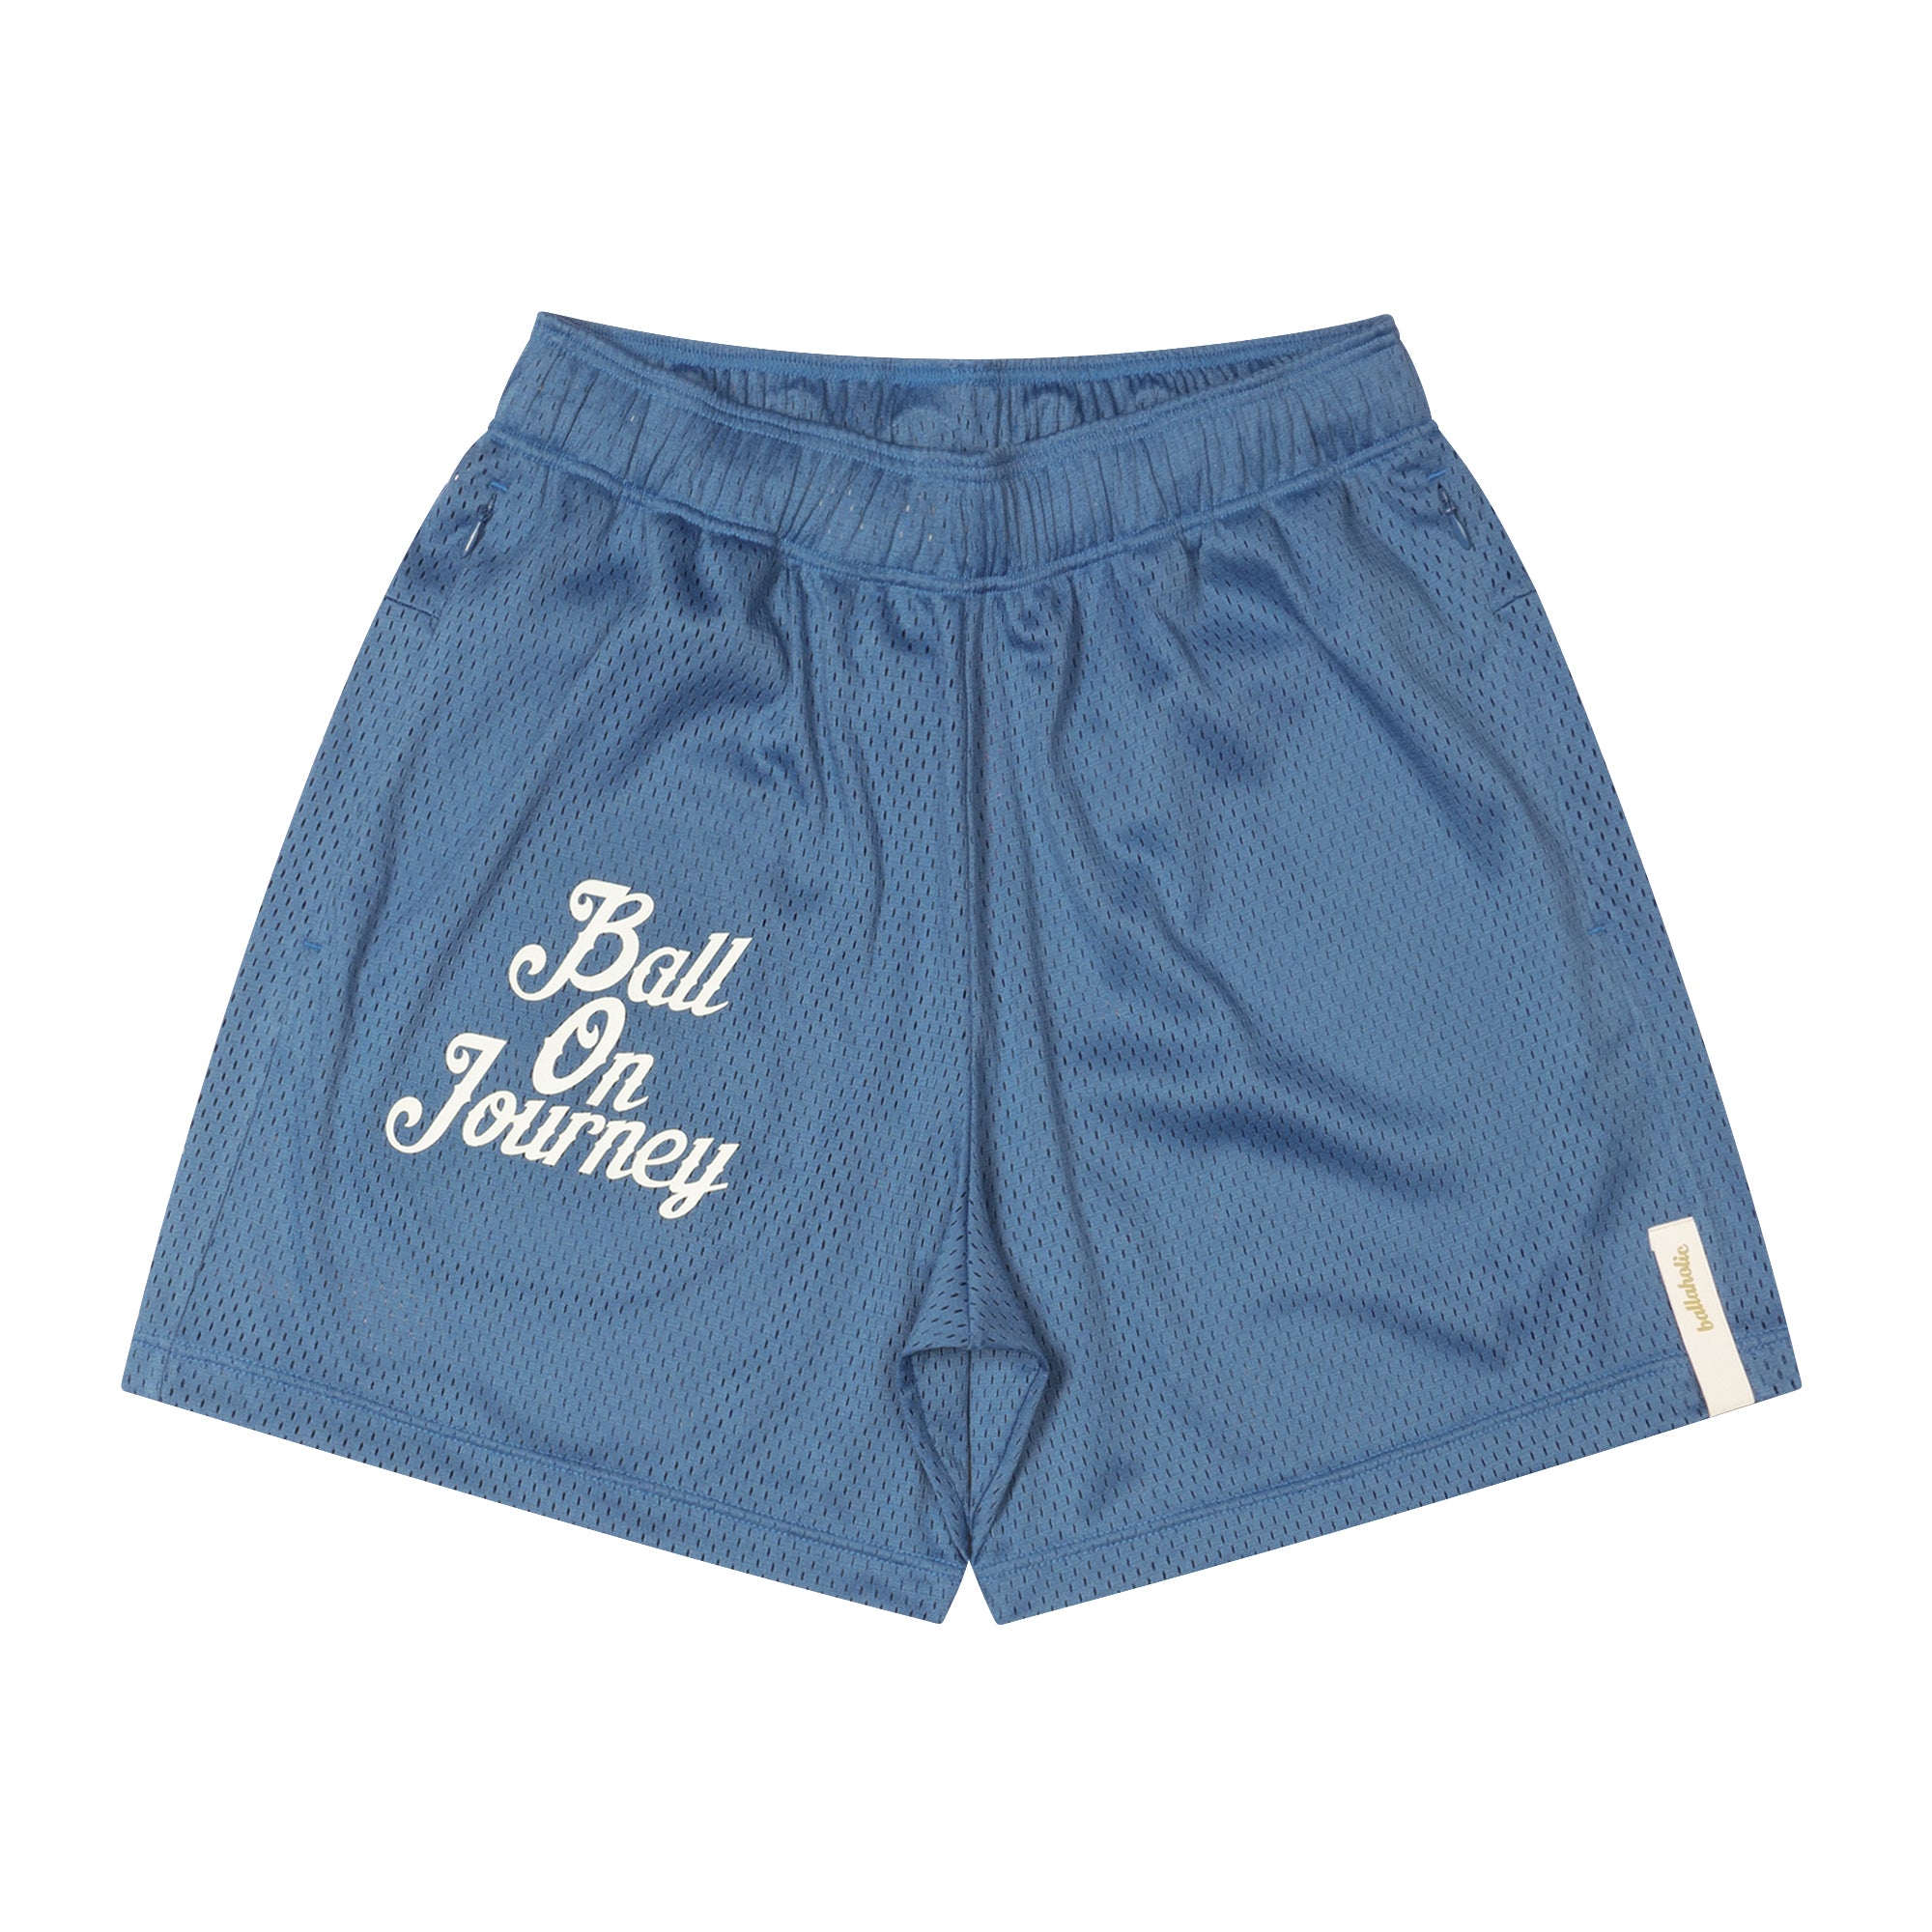 ボーラホリック Ball On Journey Mesh Zip Shorts - ショートパンツ